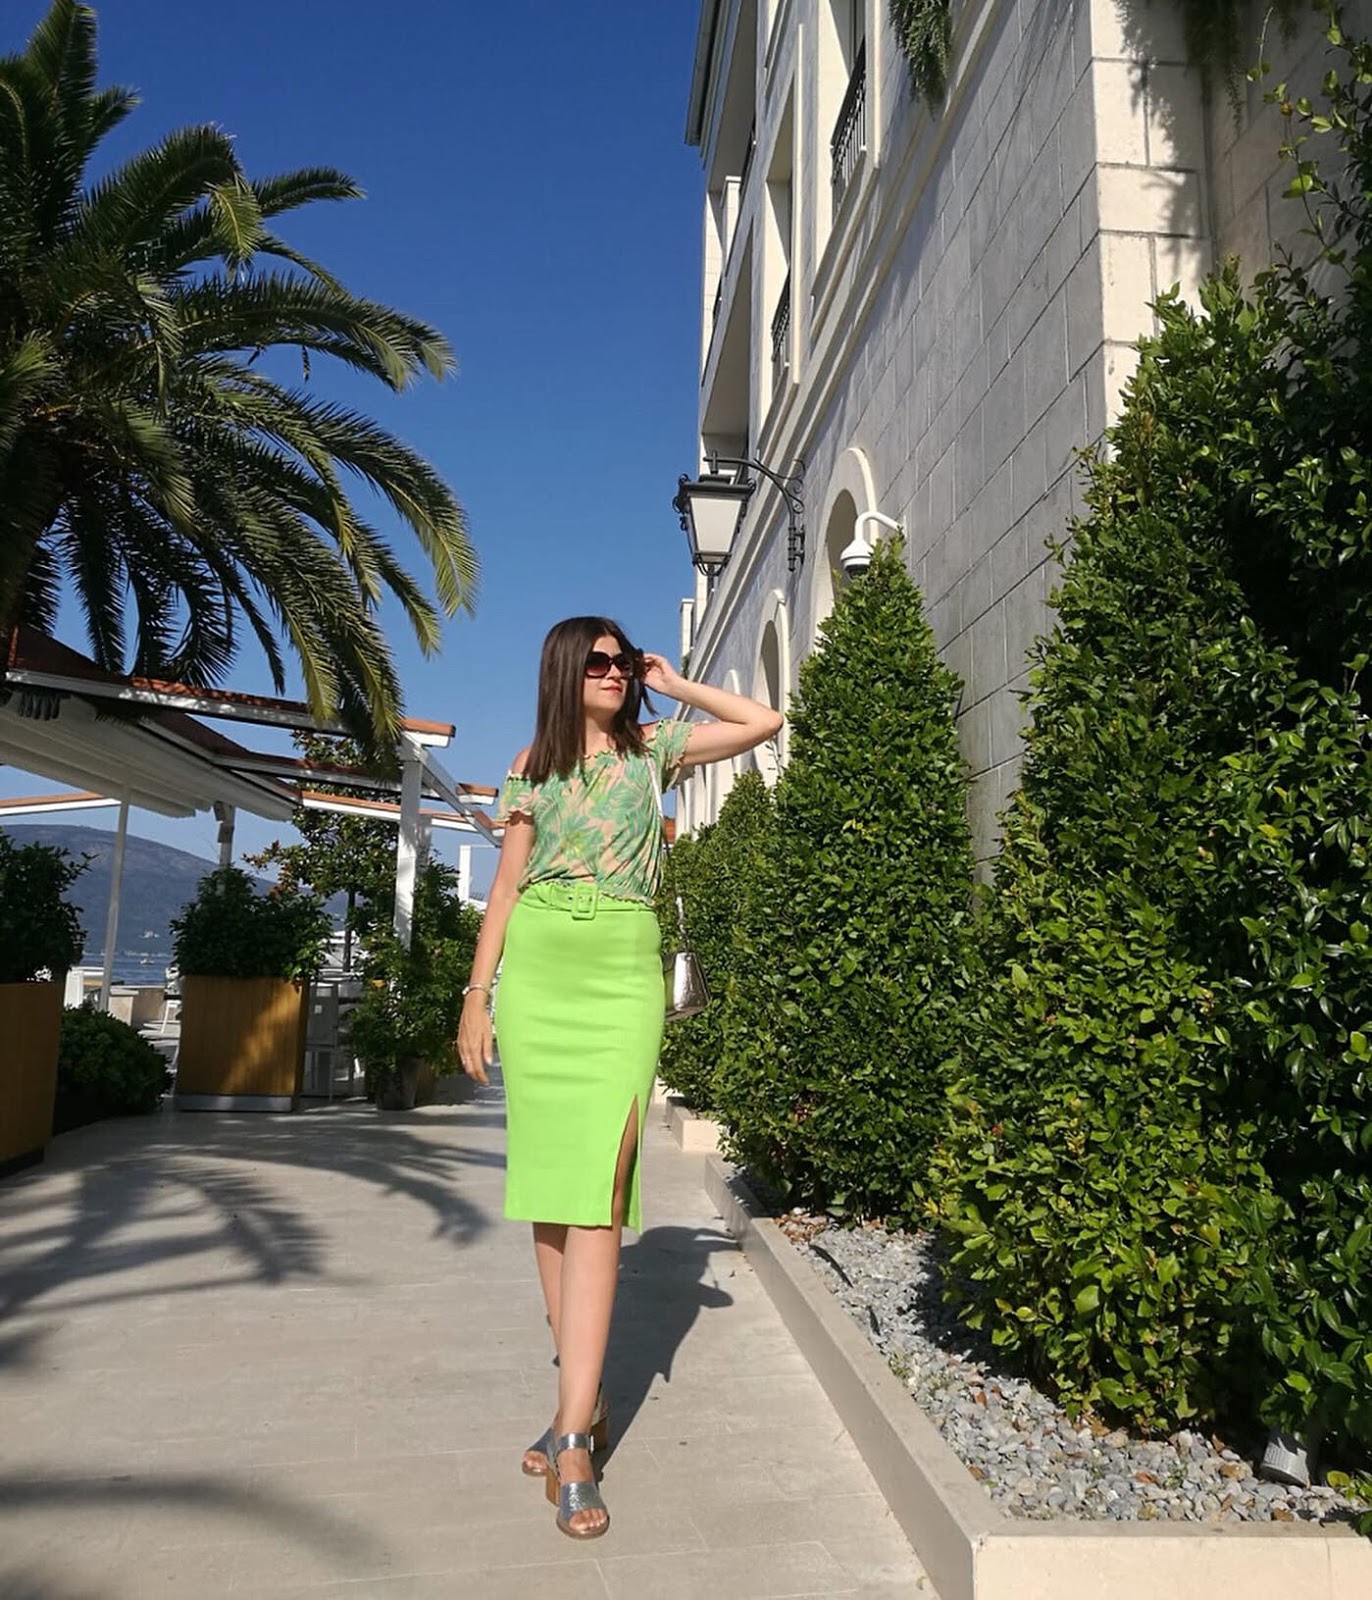 Neon Green Skirt for Porto Montenegro | BambolaI | Green skirt